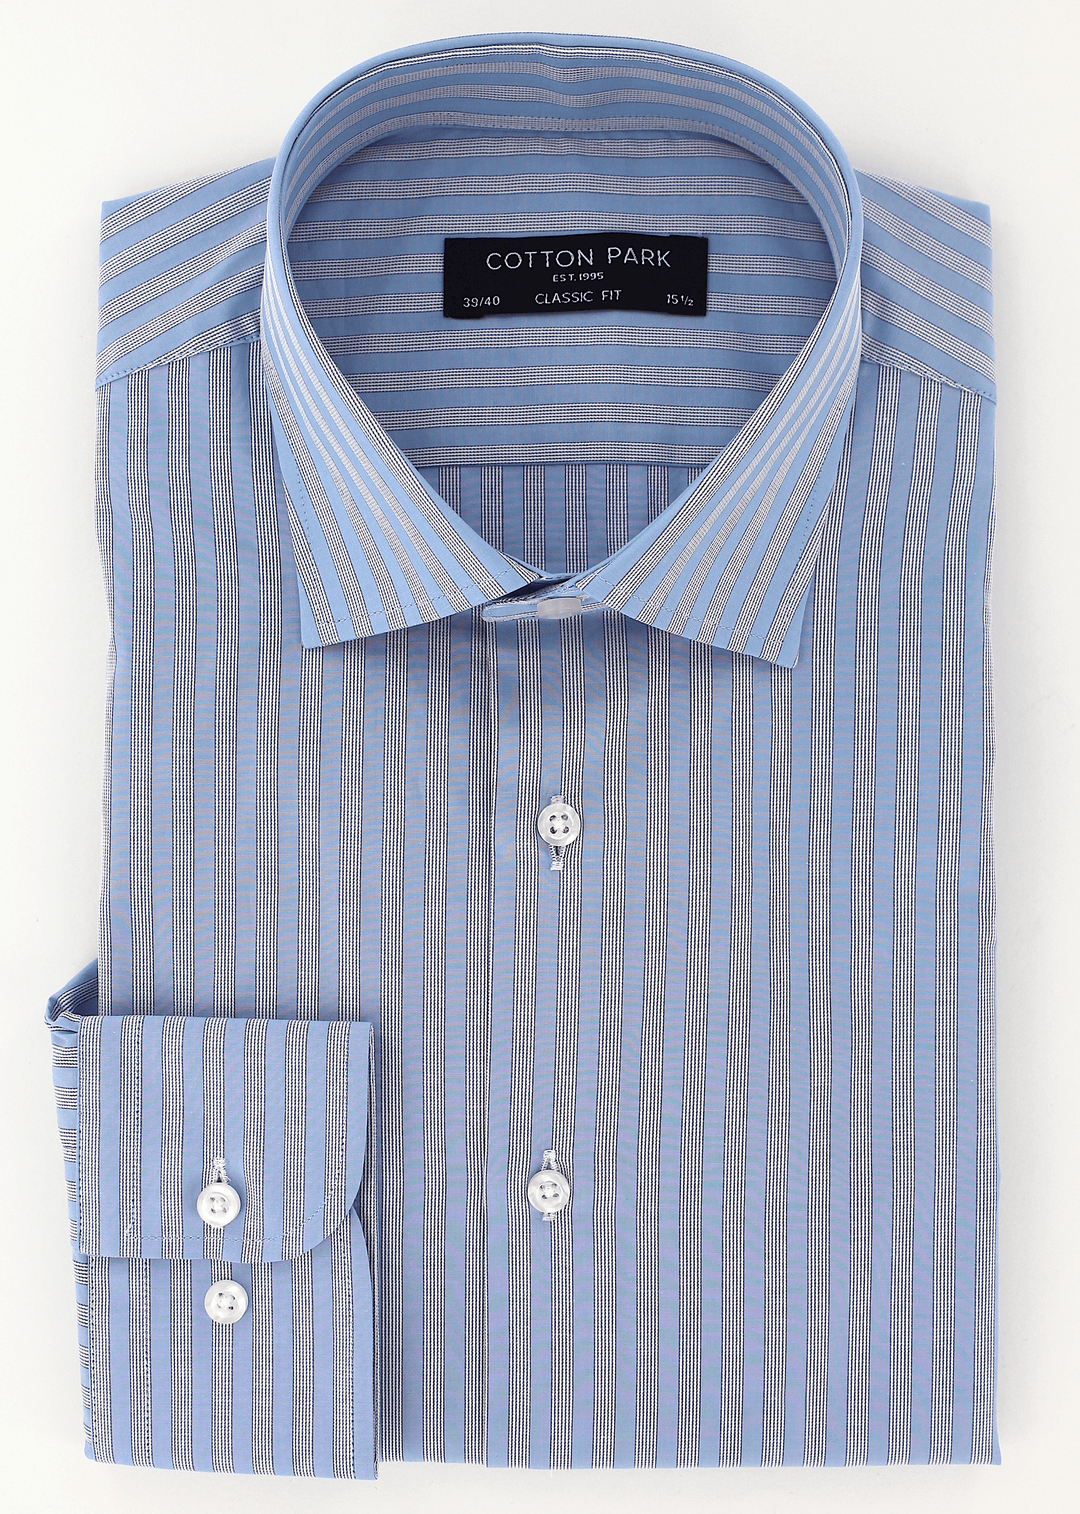 Chemise chic pour homme coupe classique bleu à rayures | Cotton Park